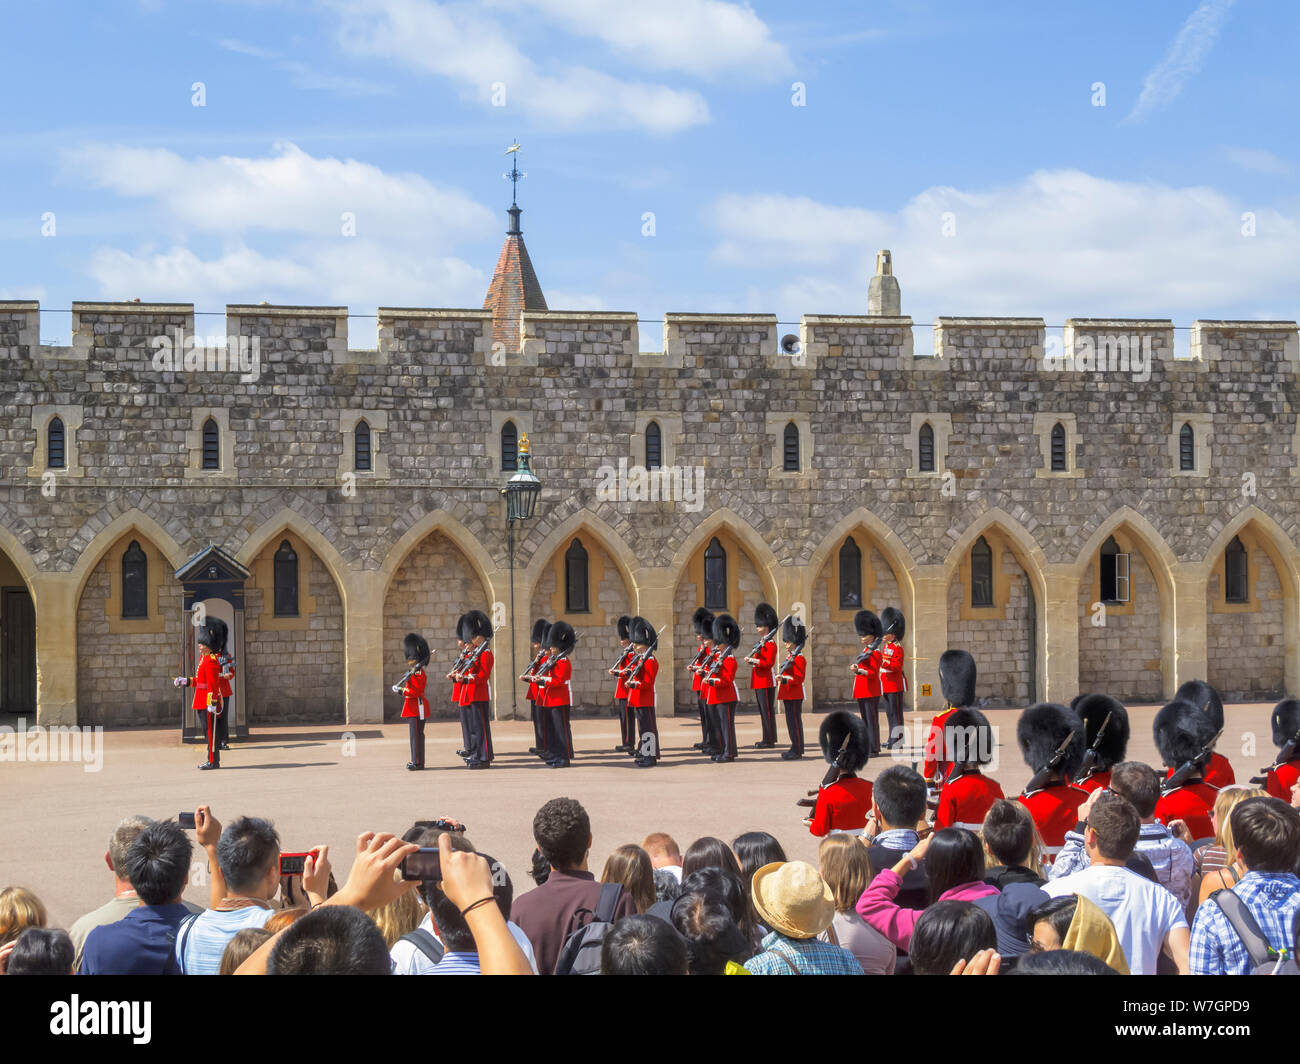 Les touristes regarder les soldats de l'des soldats au cours de l'évolution de l'Église garde au château de Windsor, Windsor enceinte garder inférieur, UK Banque D'Images